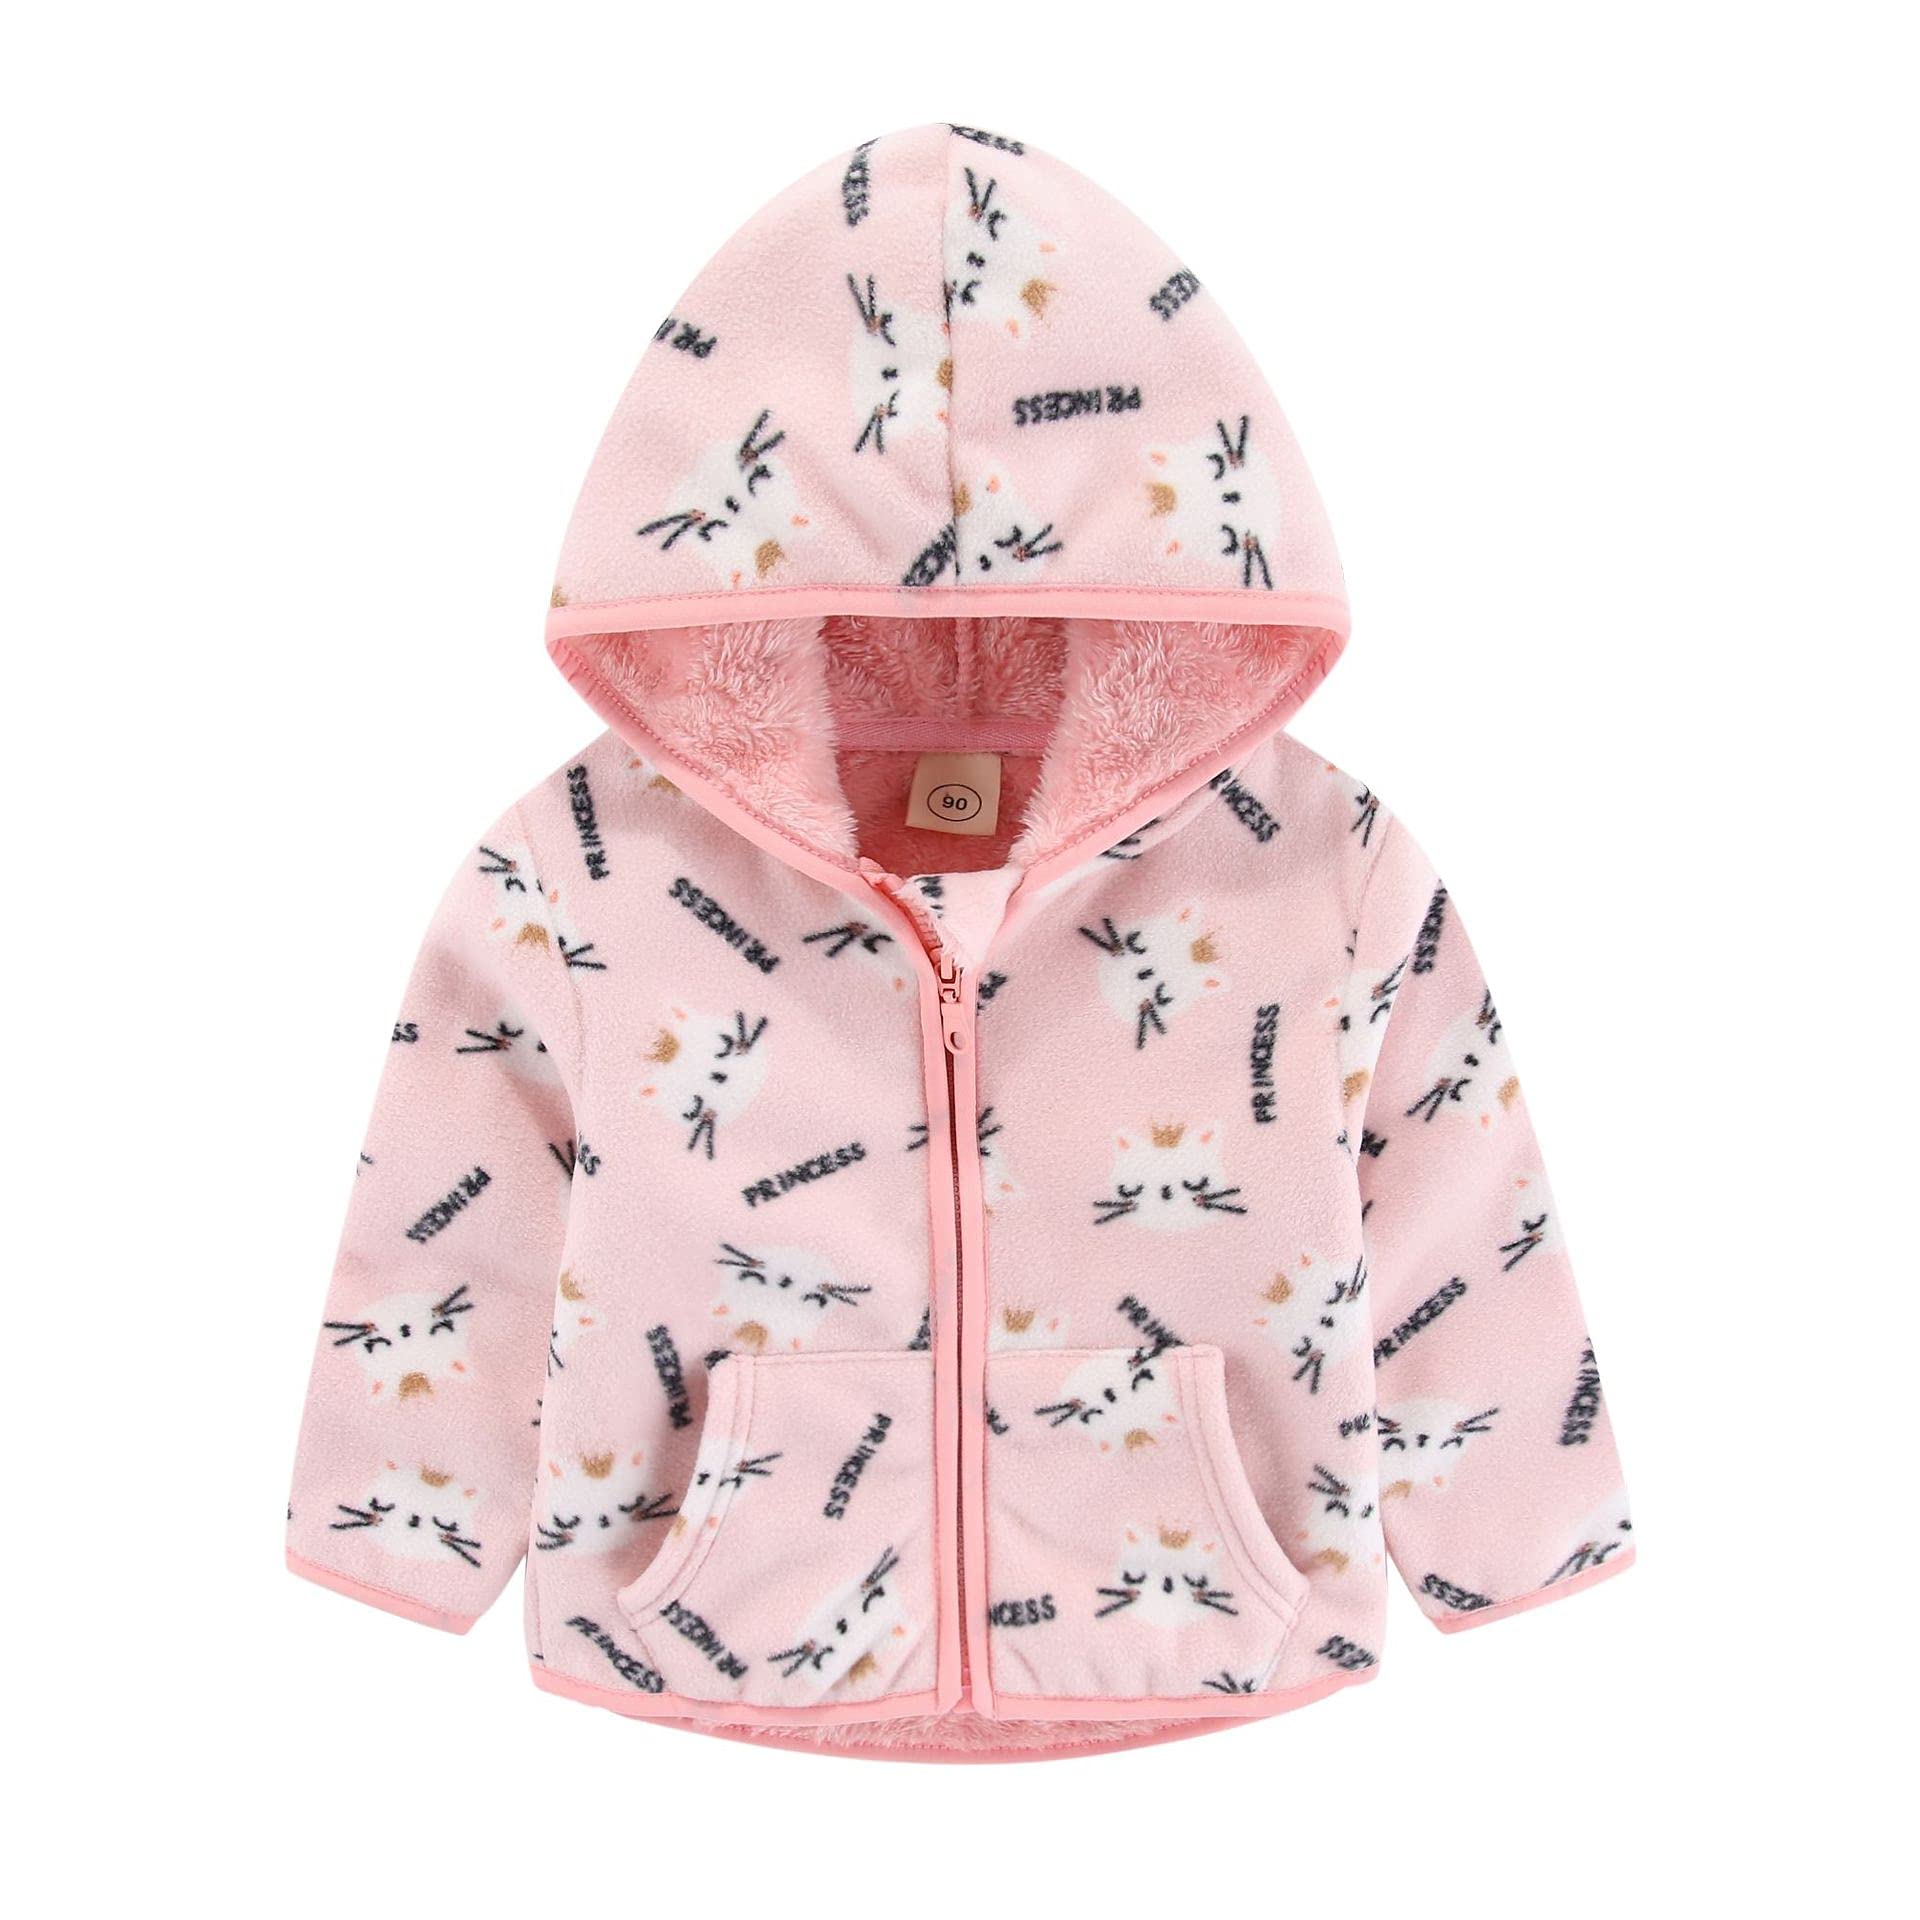 Feidoog Toddler Polar Fleece Jacket Hooded Baby Boys girls Autumn Winter Long Sleeve Thick Warm Outerwear,Pink cat,4-5T